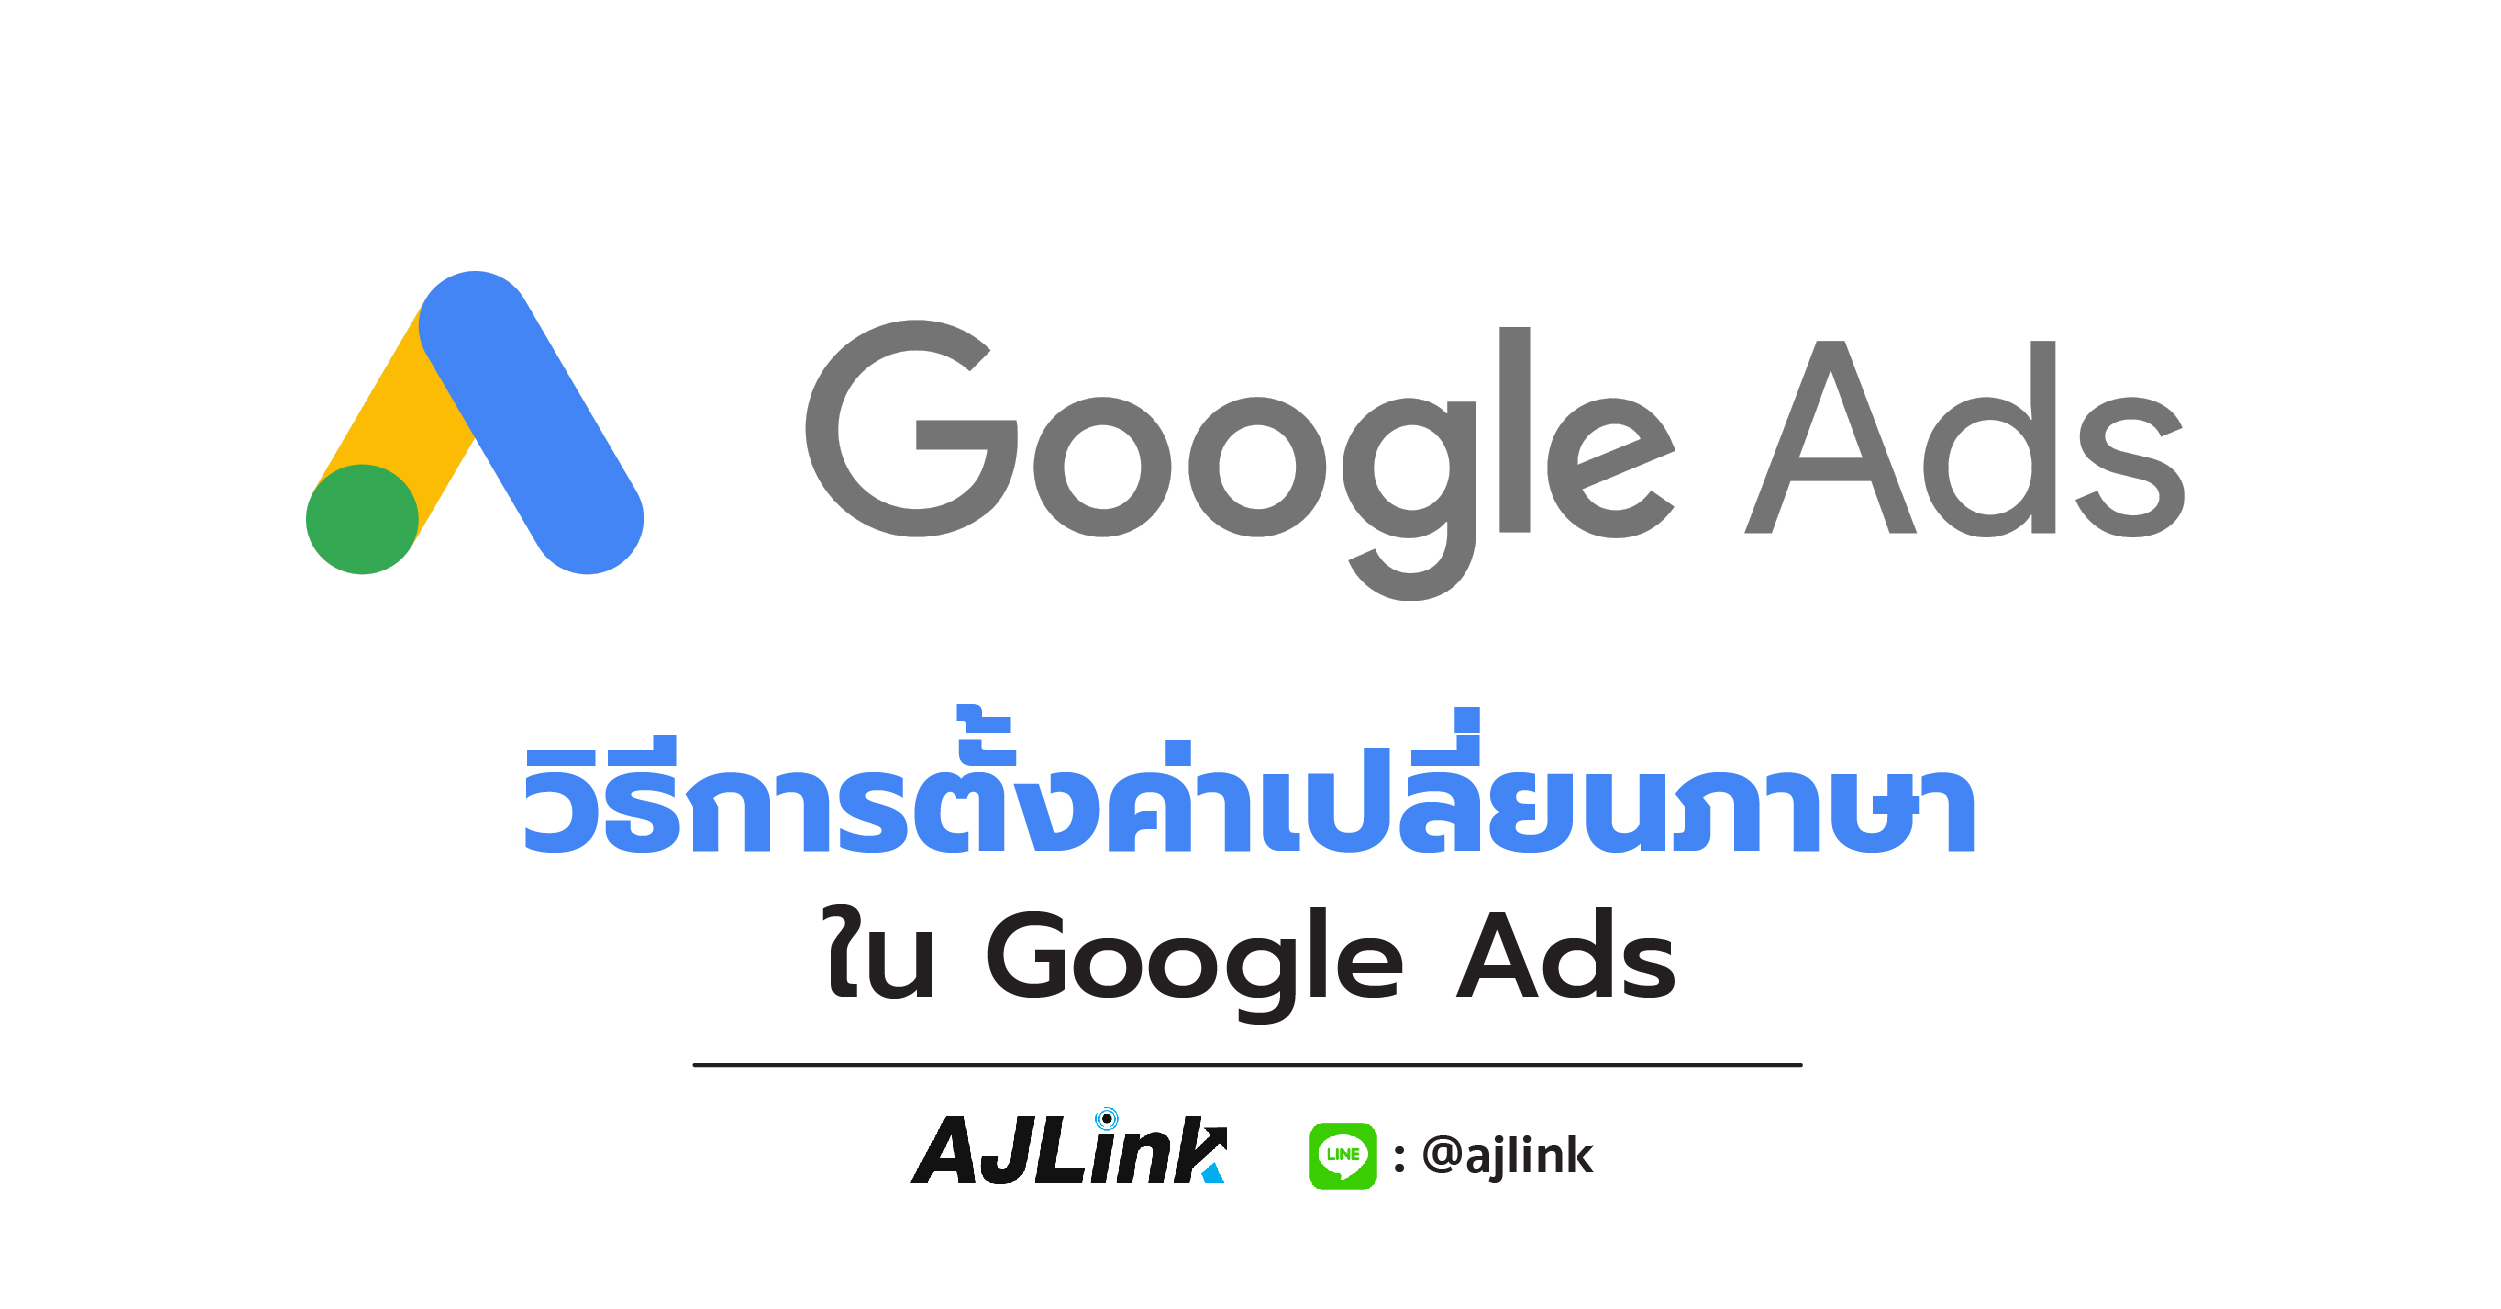 วิธีการตั้งค่าเปลี่ยนภาษาใน Google Ads